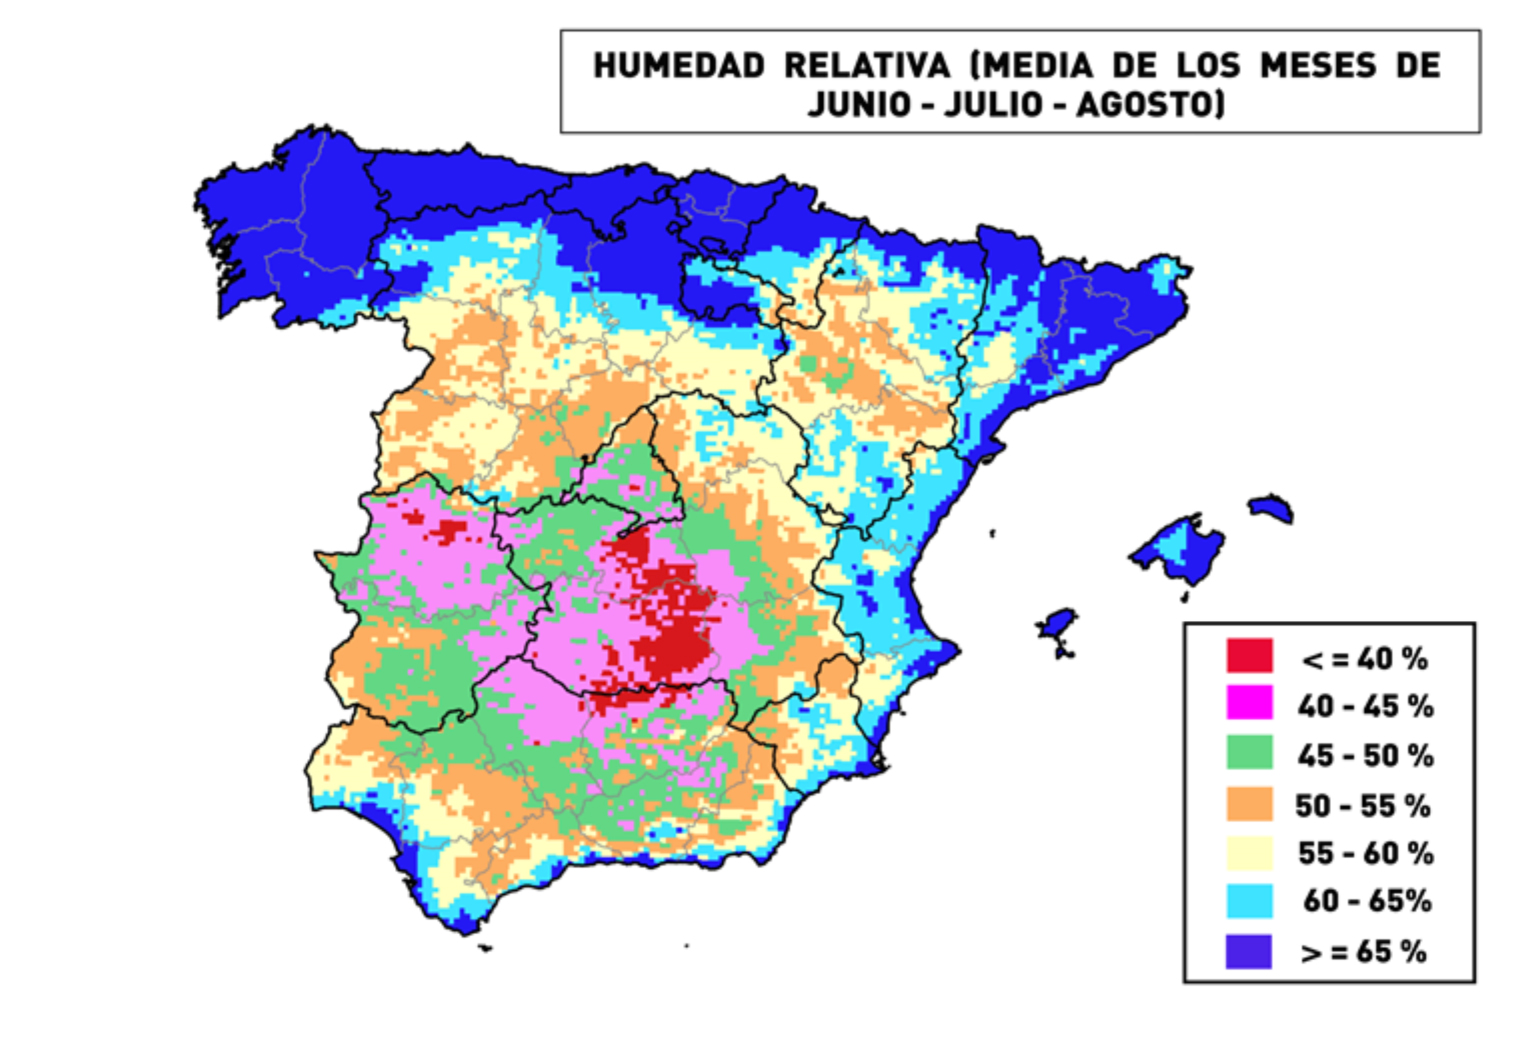 Fig.4: Mapa de humedad relativa media de los meses de Junio, Julio y Agosto en Espaa